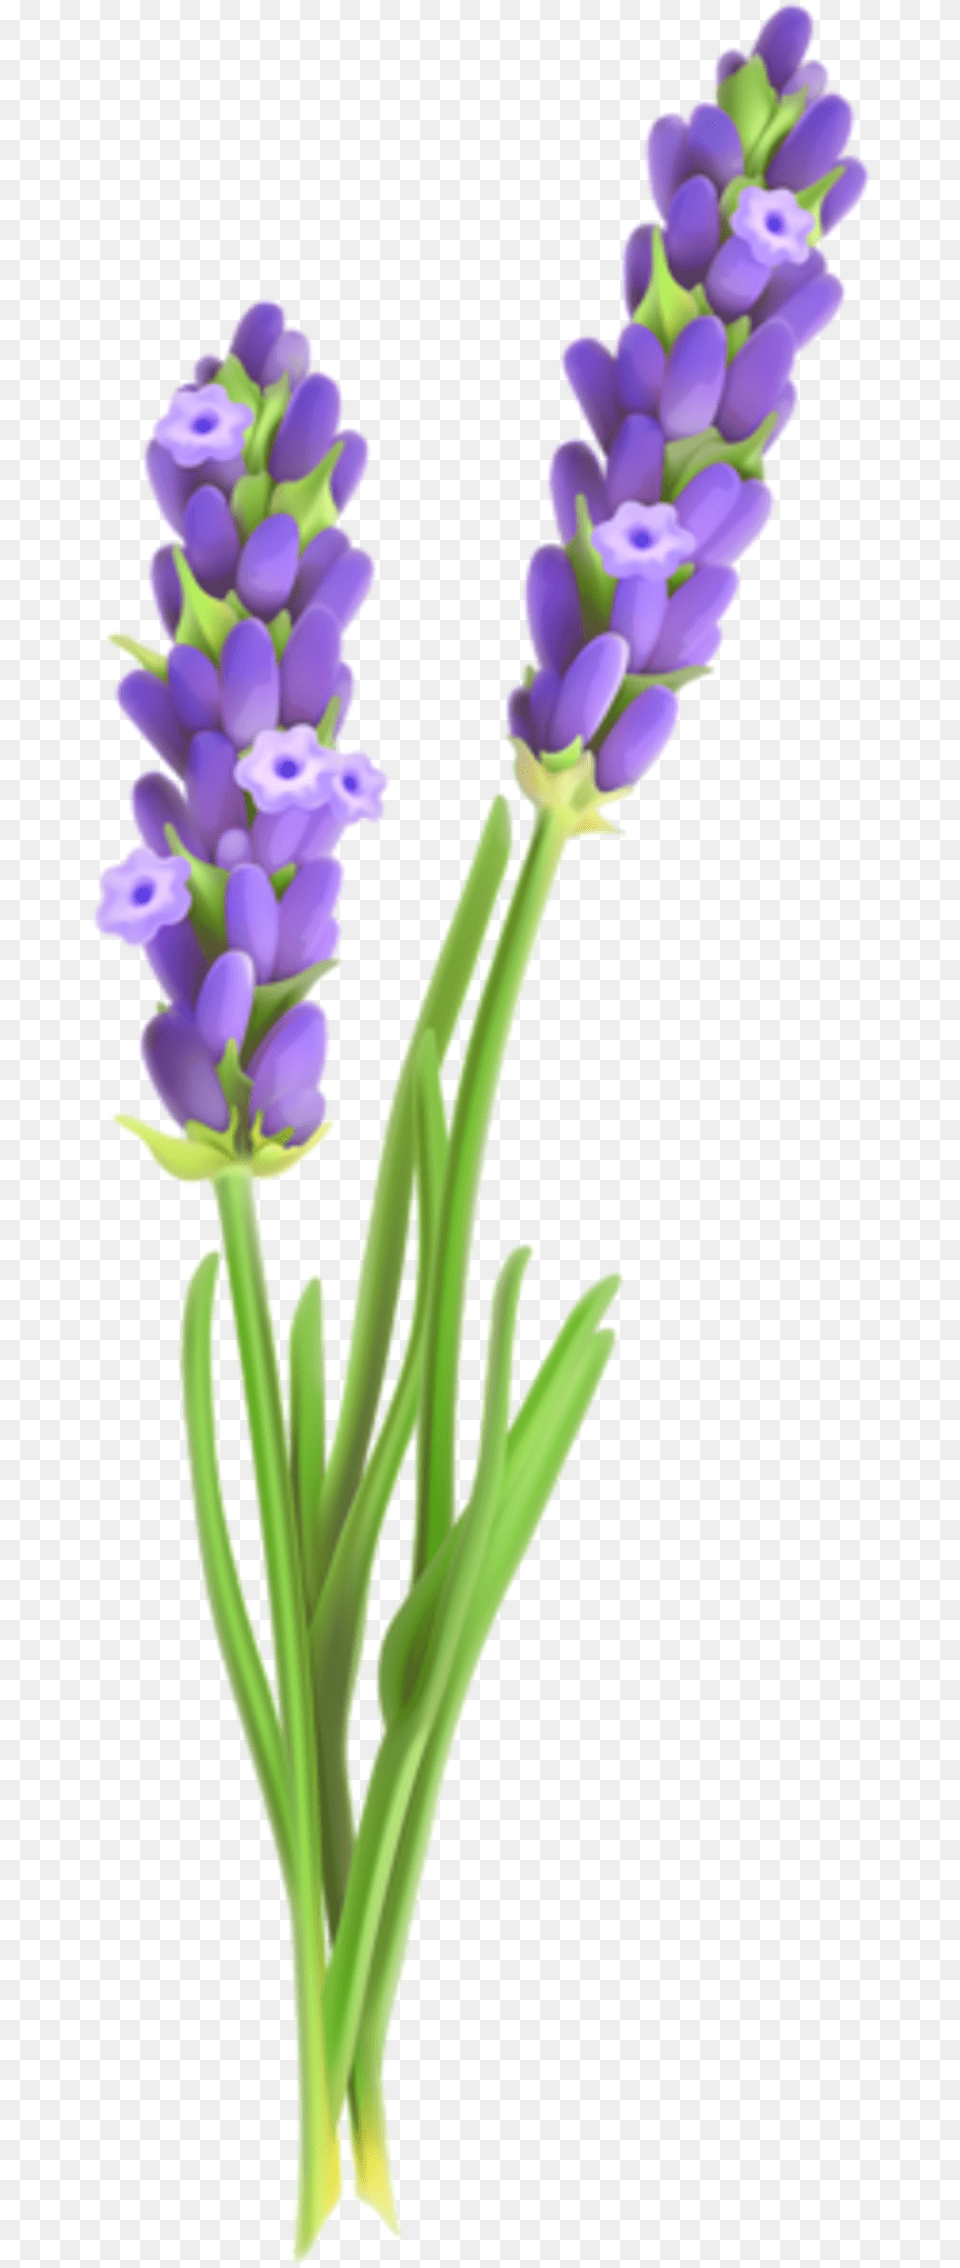 Transparent Lavender Sprig Clipart Lavender Plant Clip Art, Flower, Lupin Png Image